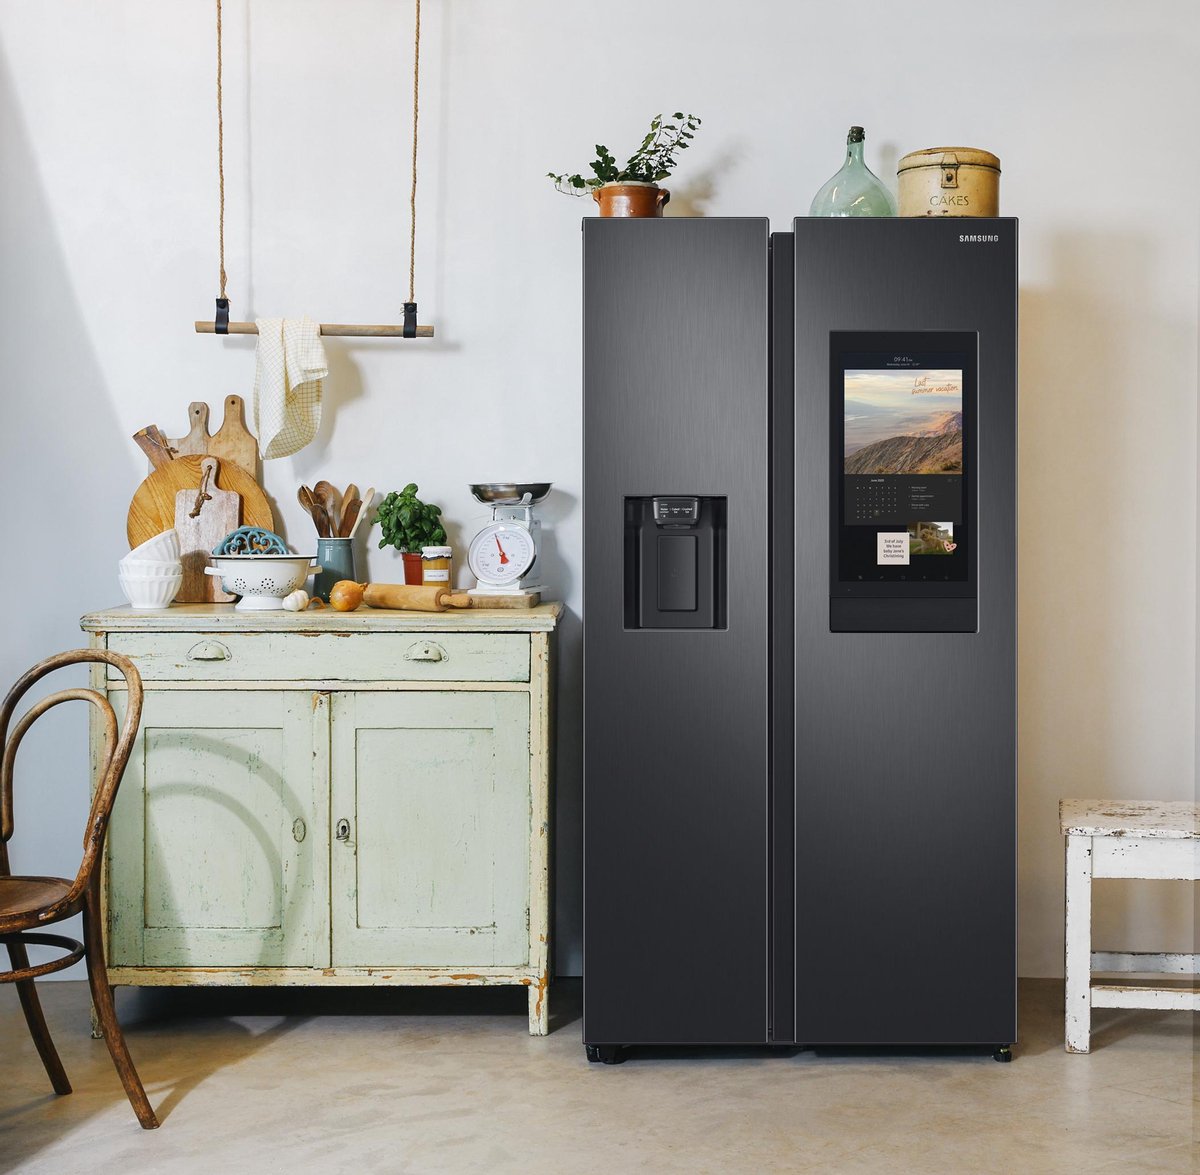 Samsung slimme koelkast RS6HA8891B1/EF smart koelkast Family Hub ideaal voor in de keuken